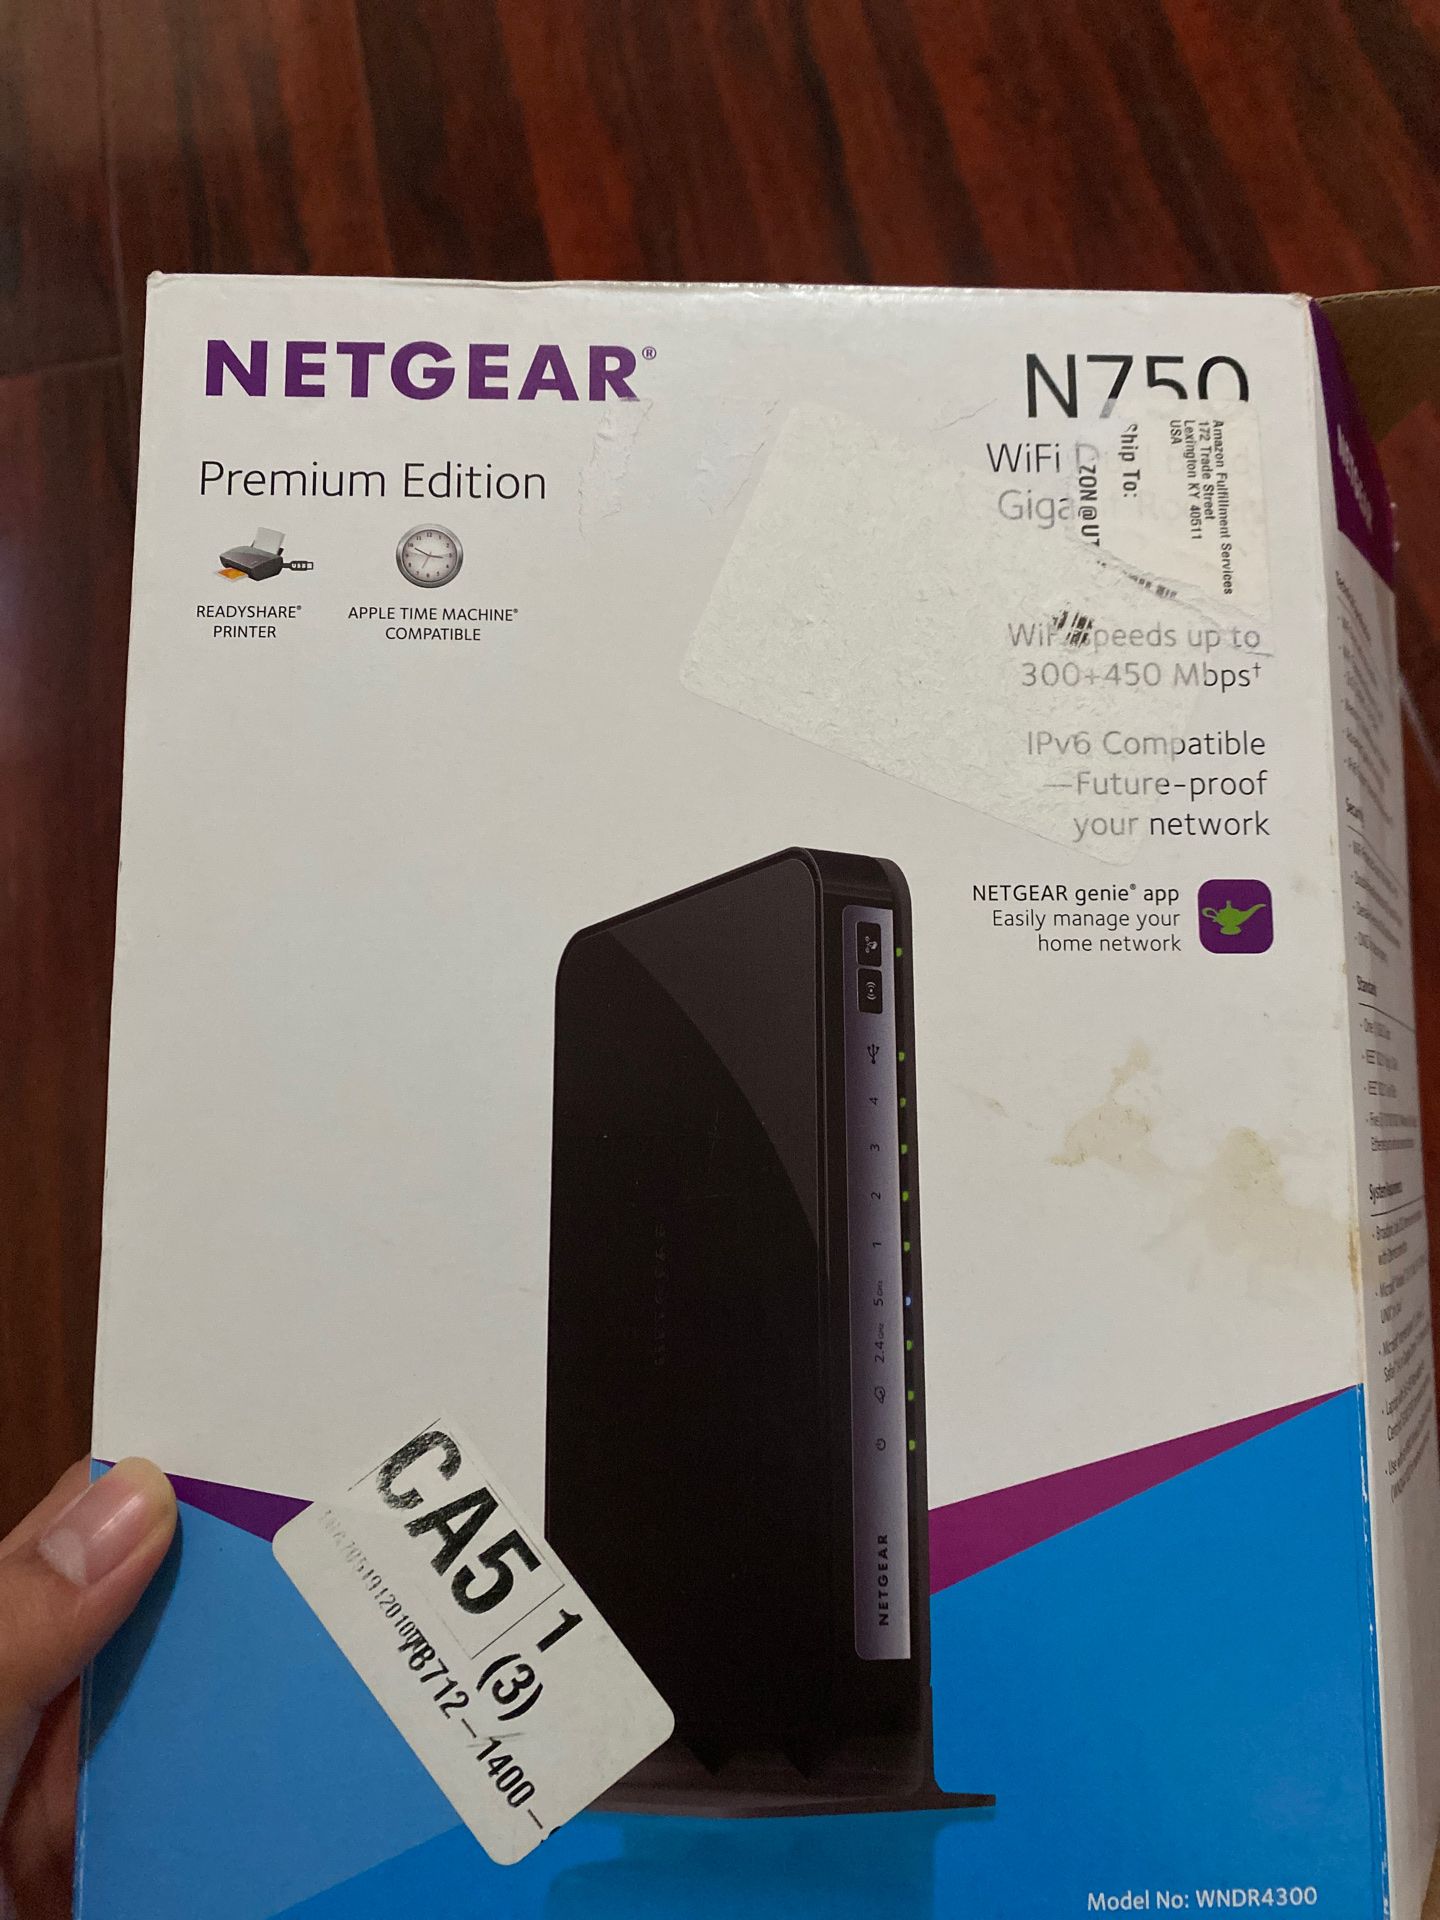 Netgear n750 WiFi router